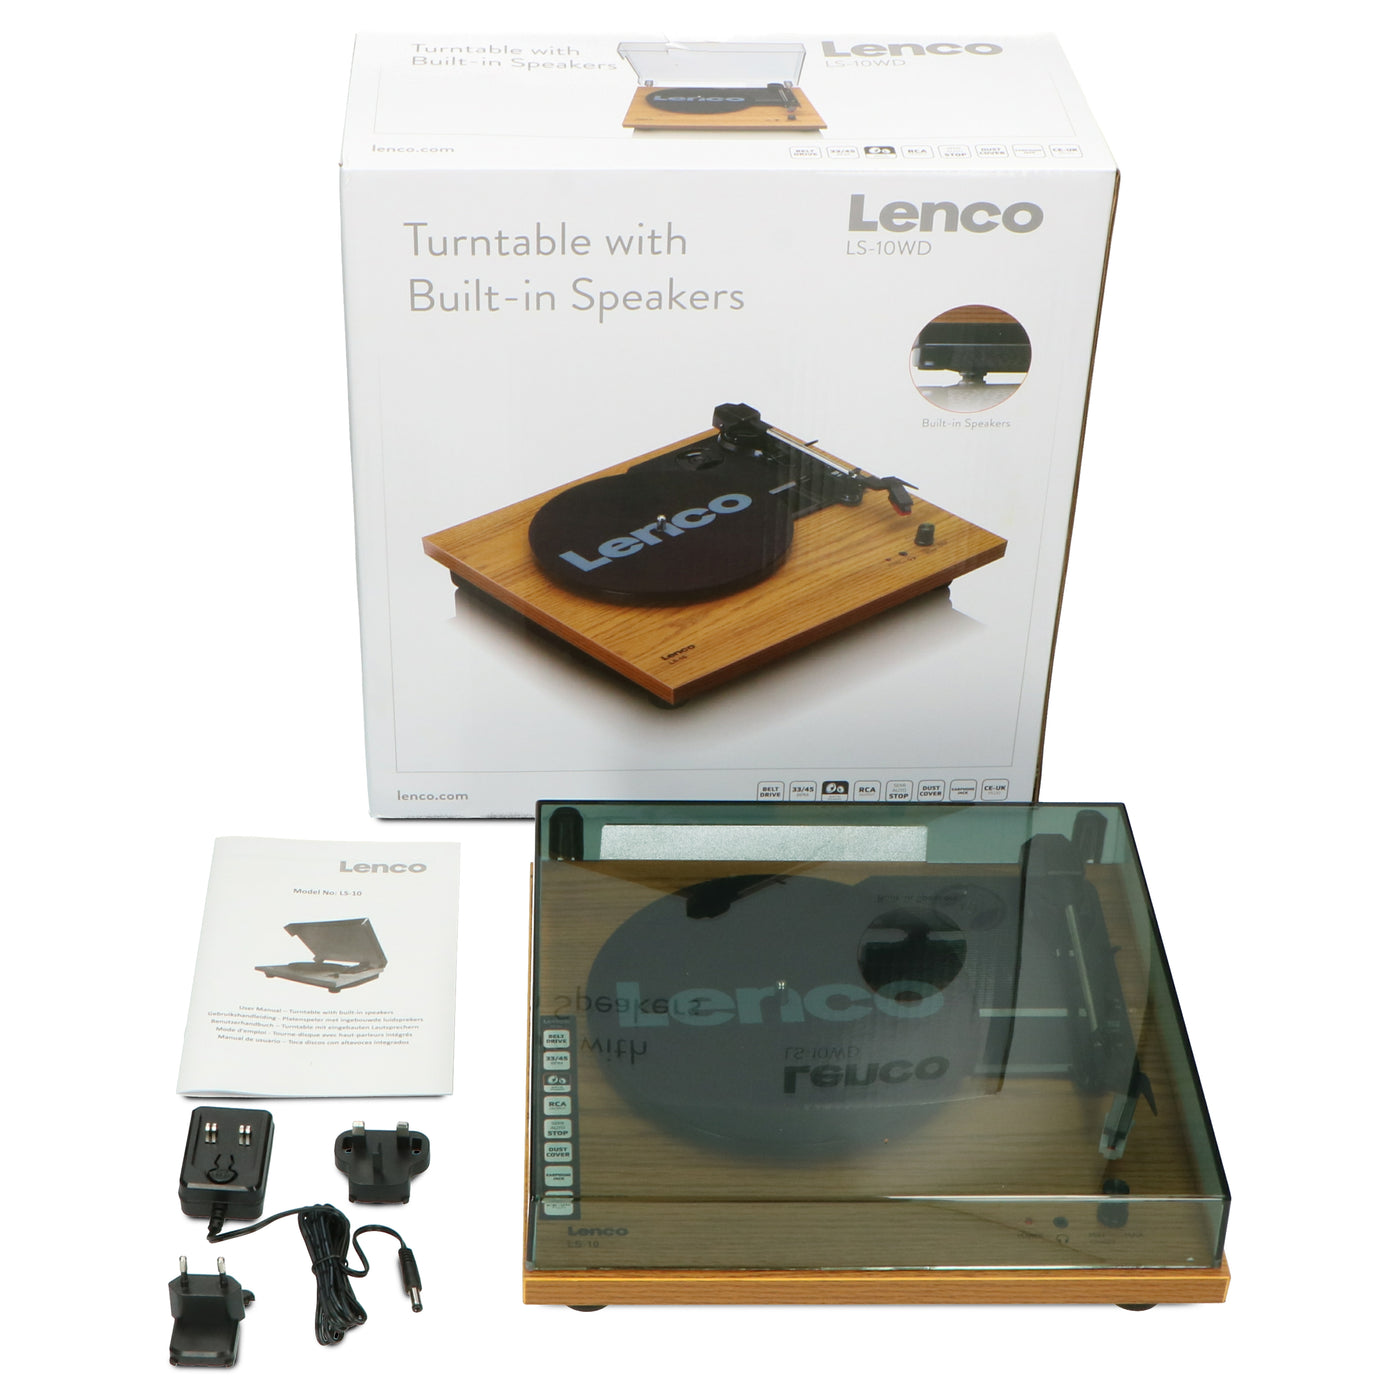 Lenco LS-10WD - Plattenspieler mit Riemenantrieb und Holzgehäuse - eingebaute Lautsprecher - Kopfhöreranschluß - Holz